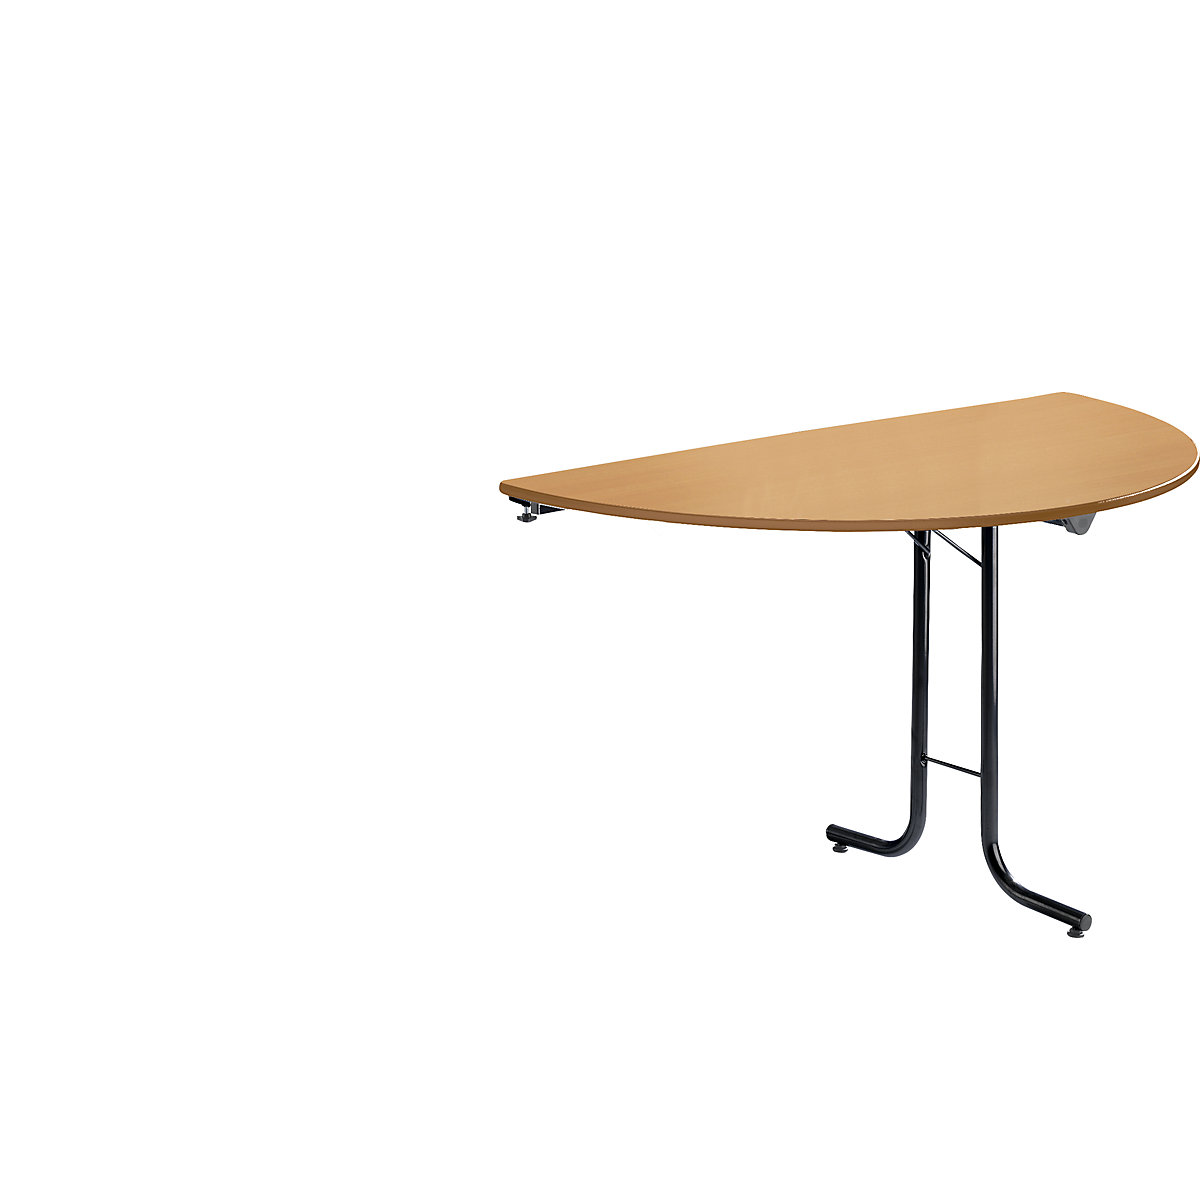 Přístavný stůl ke sklopnému stolu, půlkruhový tvar desky, 1400 x 700 mm, podstavec černý, deska bukový dekor-4